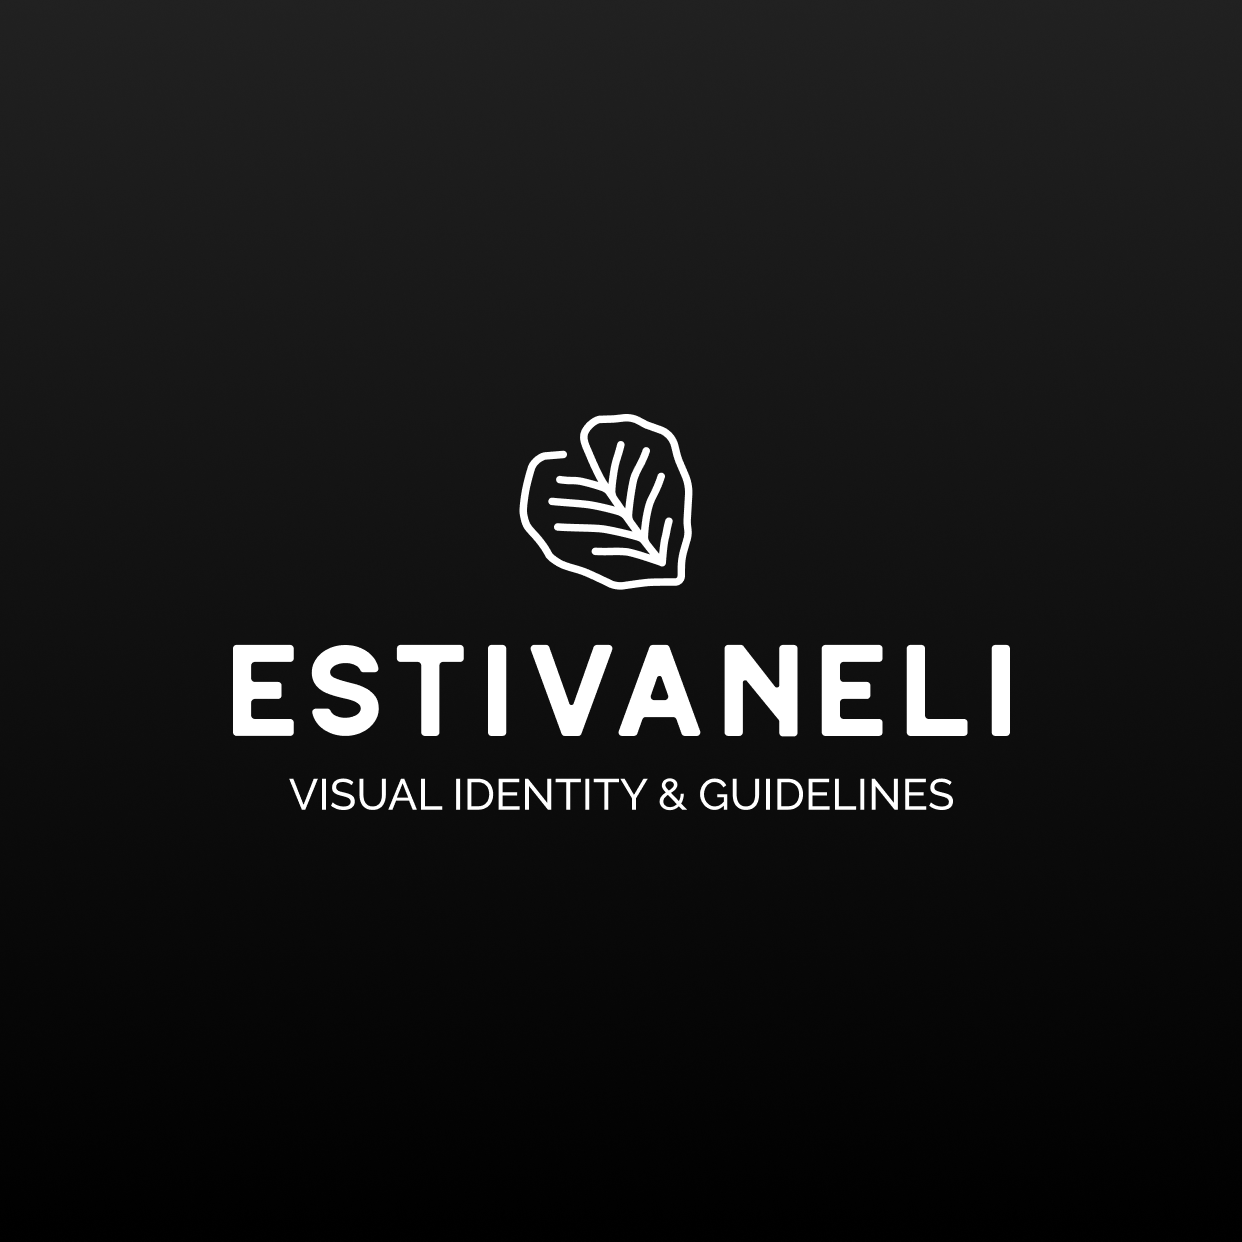 Estivaneli – Wholesale Quality Clothing